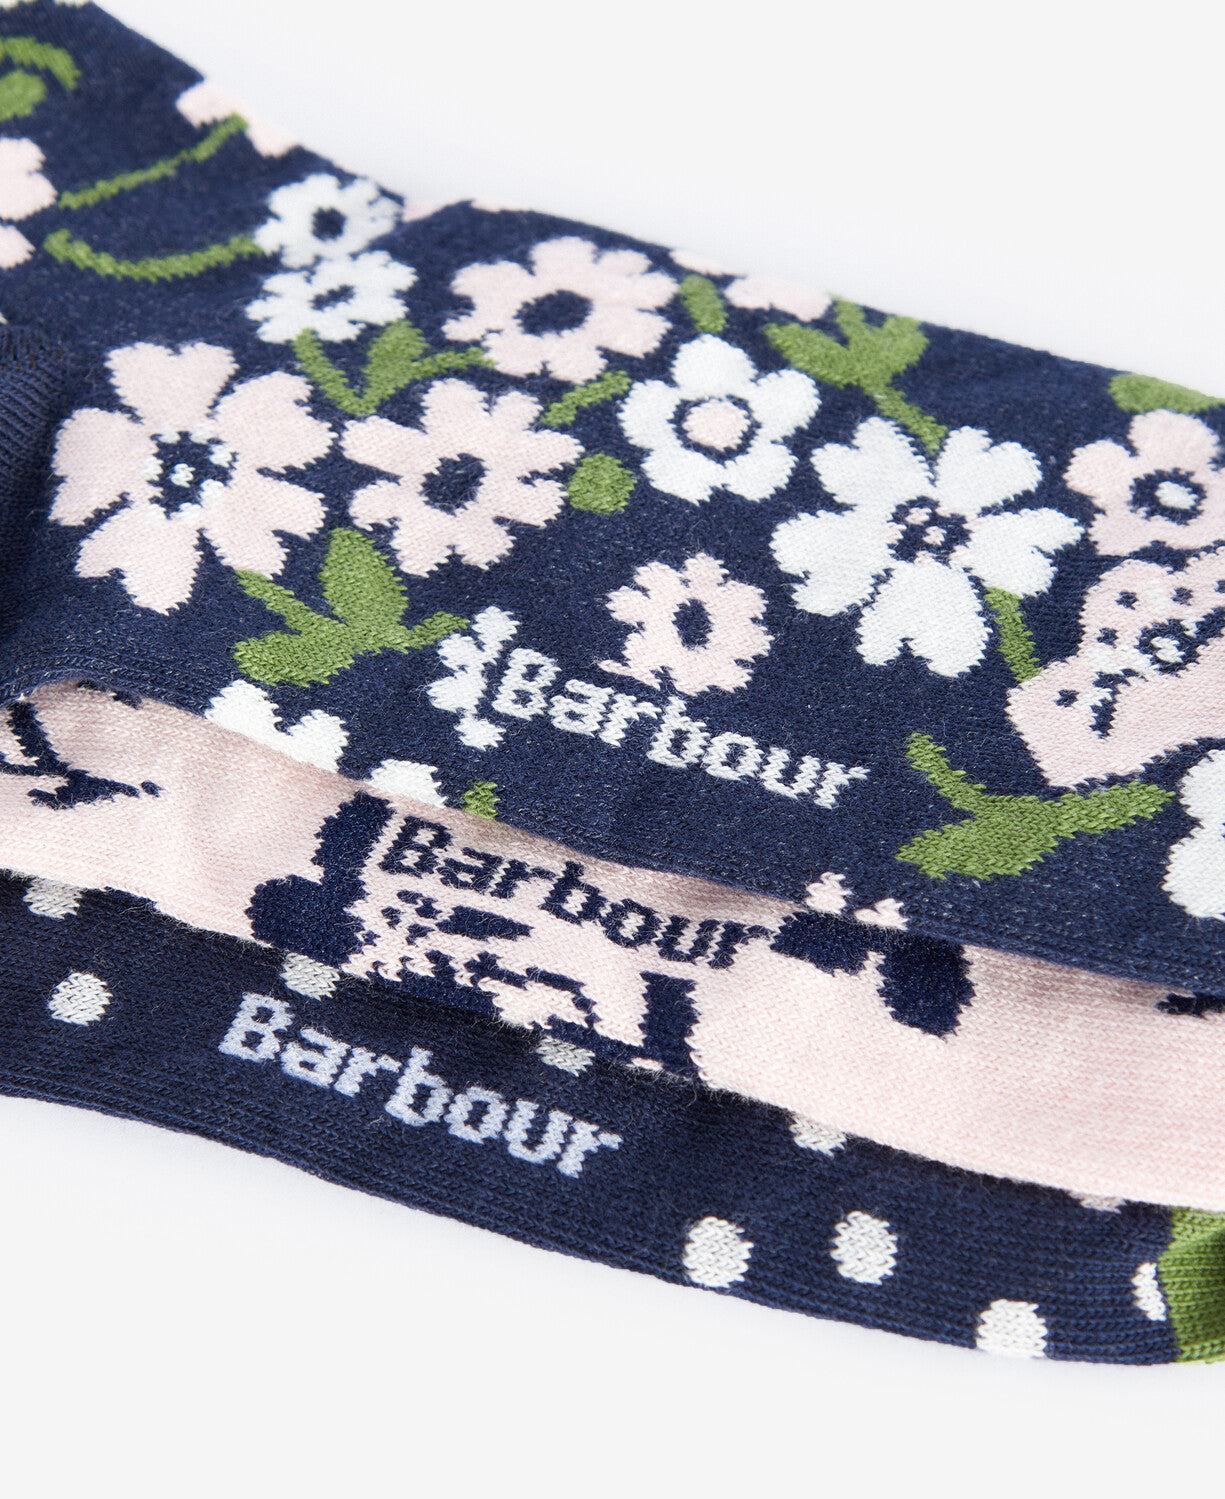 Barbour Ladies Socks Gift Set